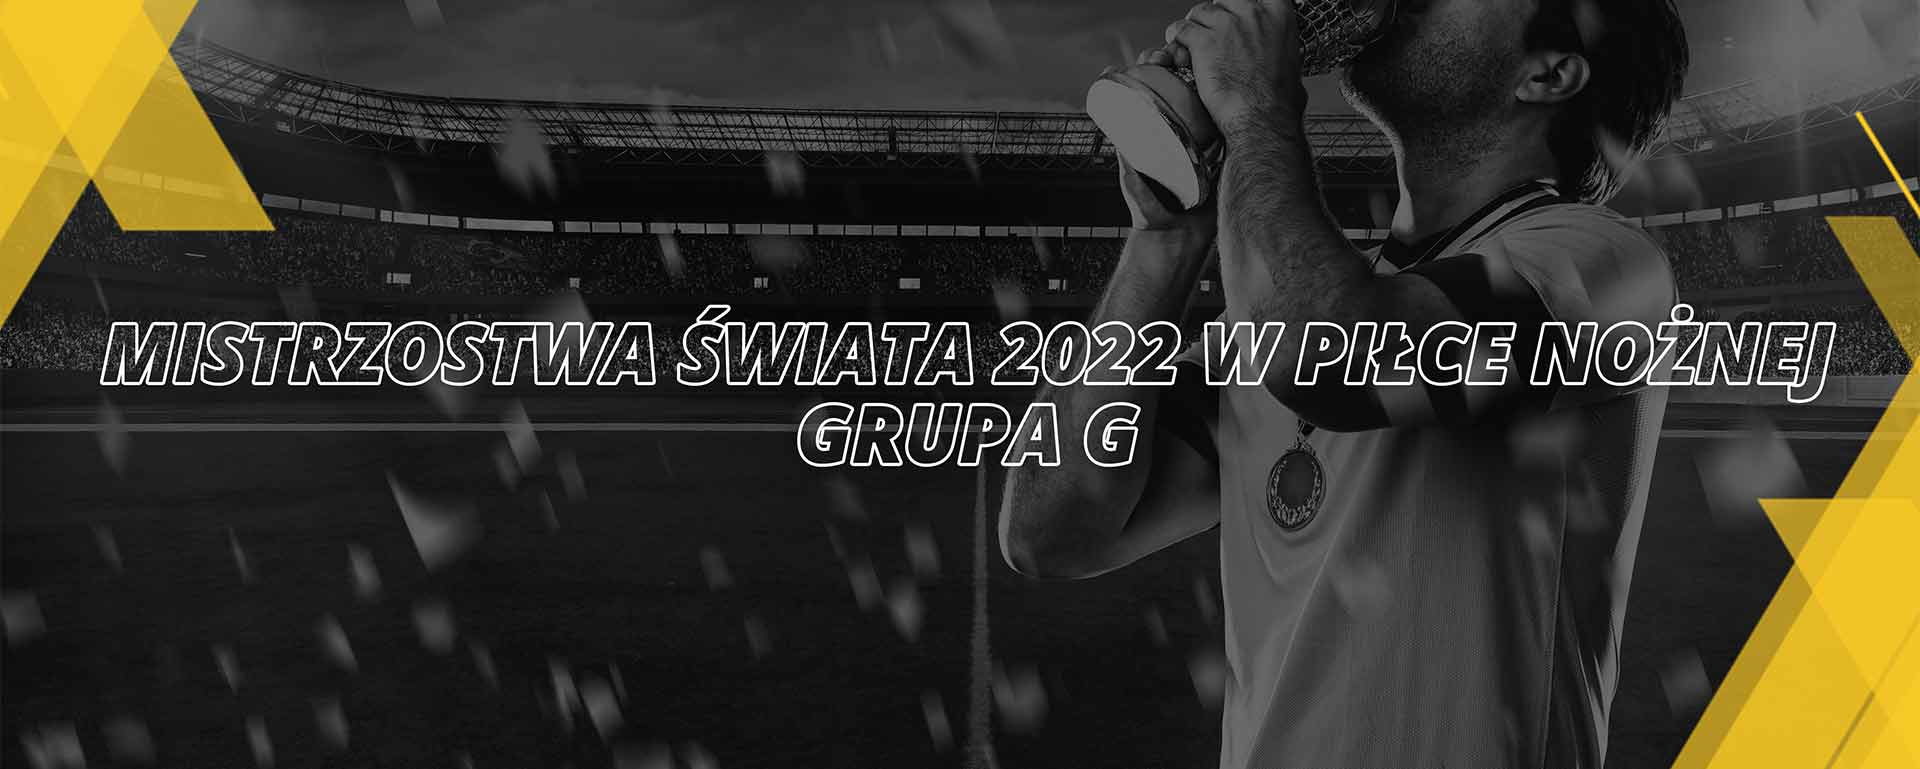 Mistrzostwa Świata FIFA 2022 grupa G | Katar 2022